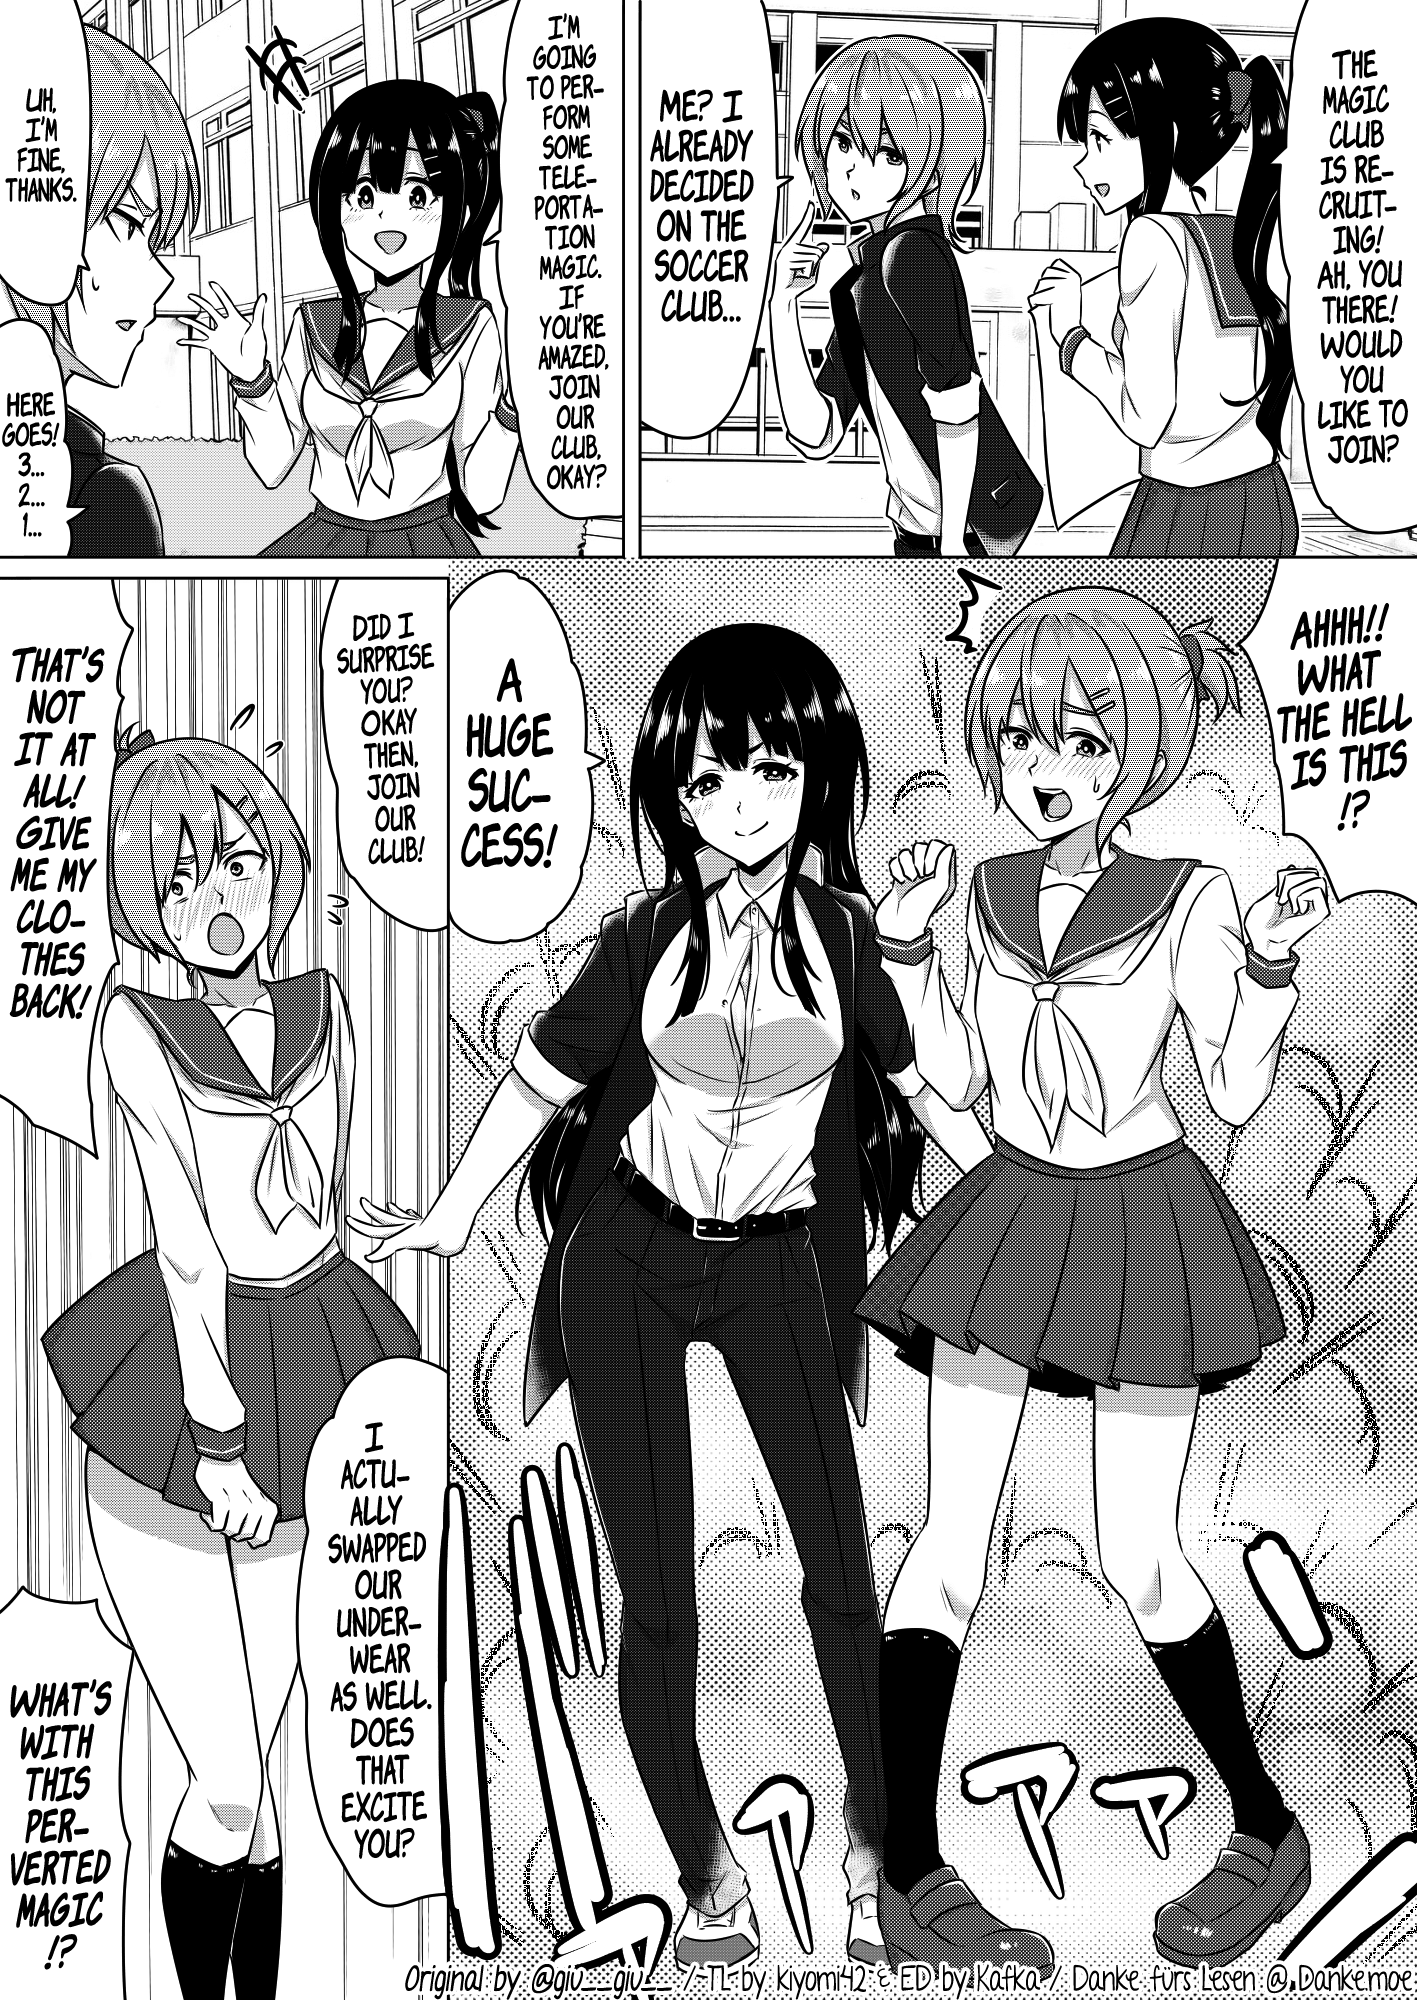 A Club Recruitment Magic Trick manga